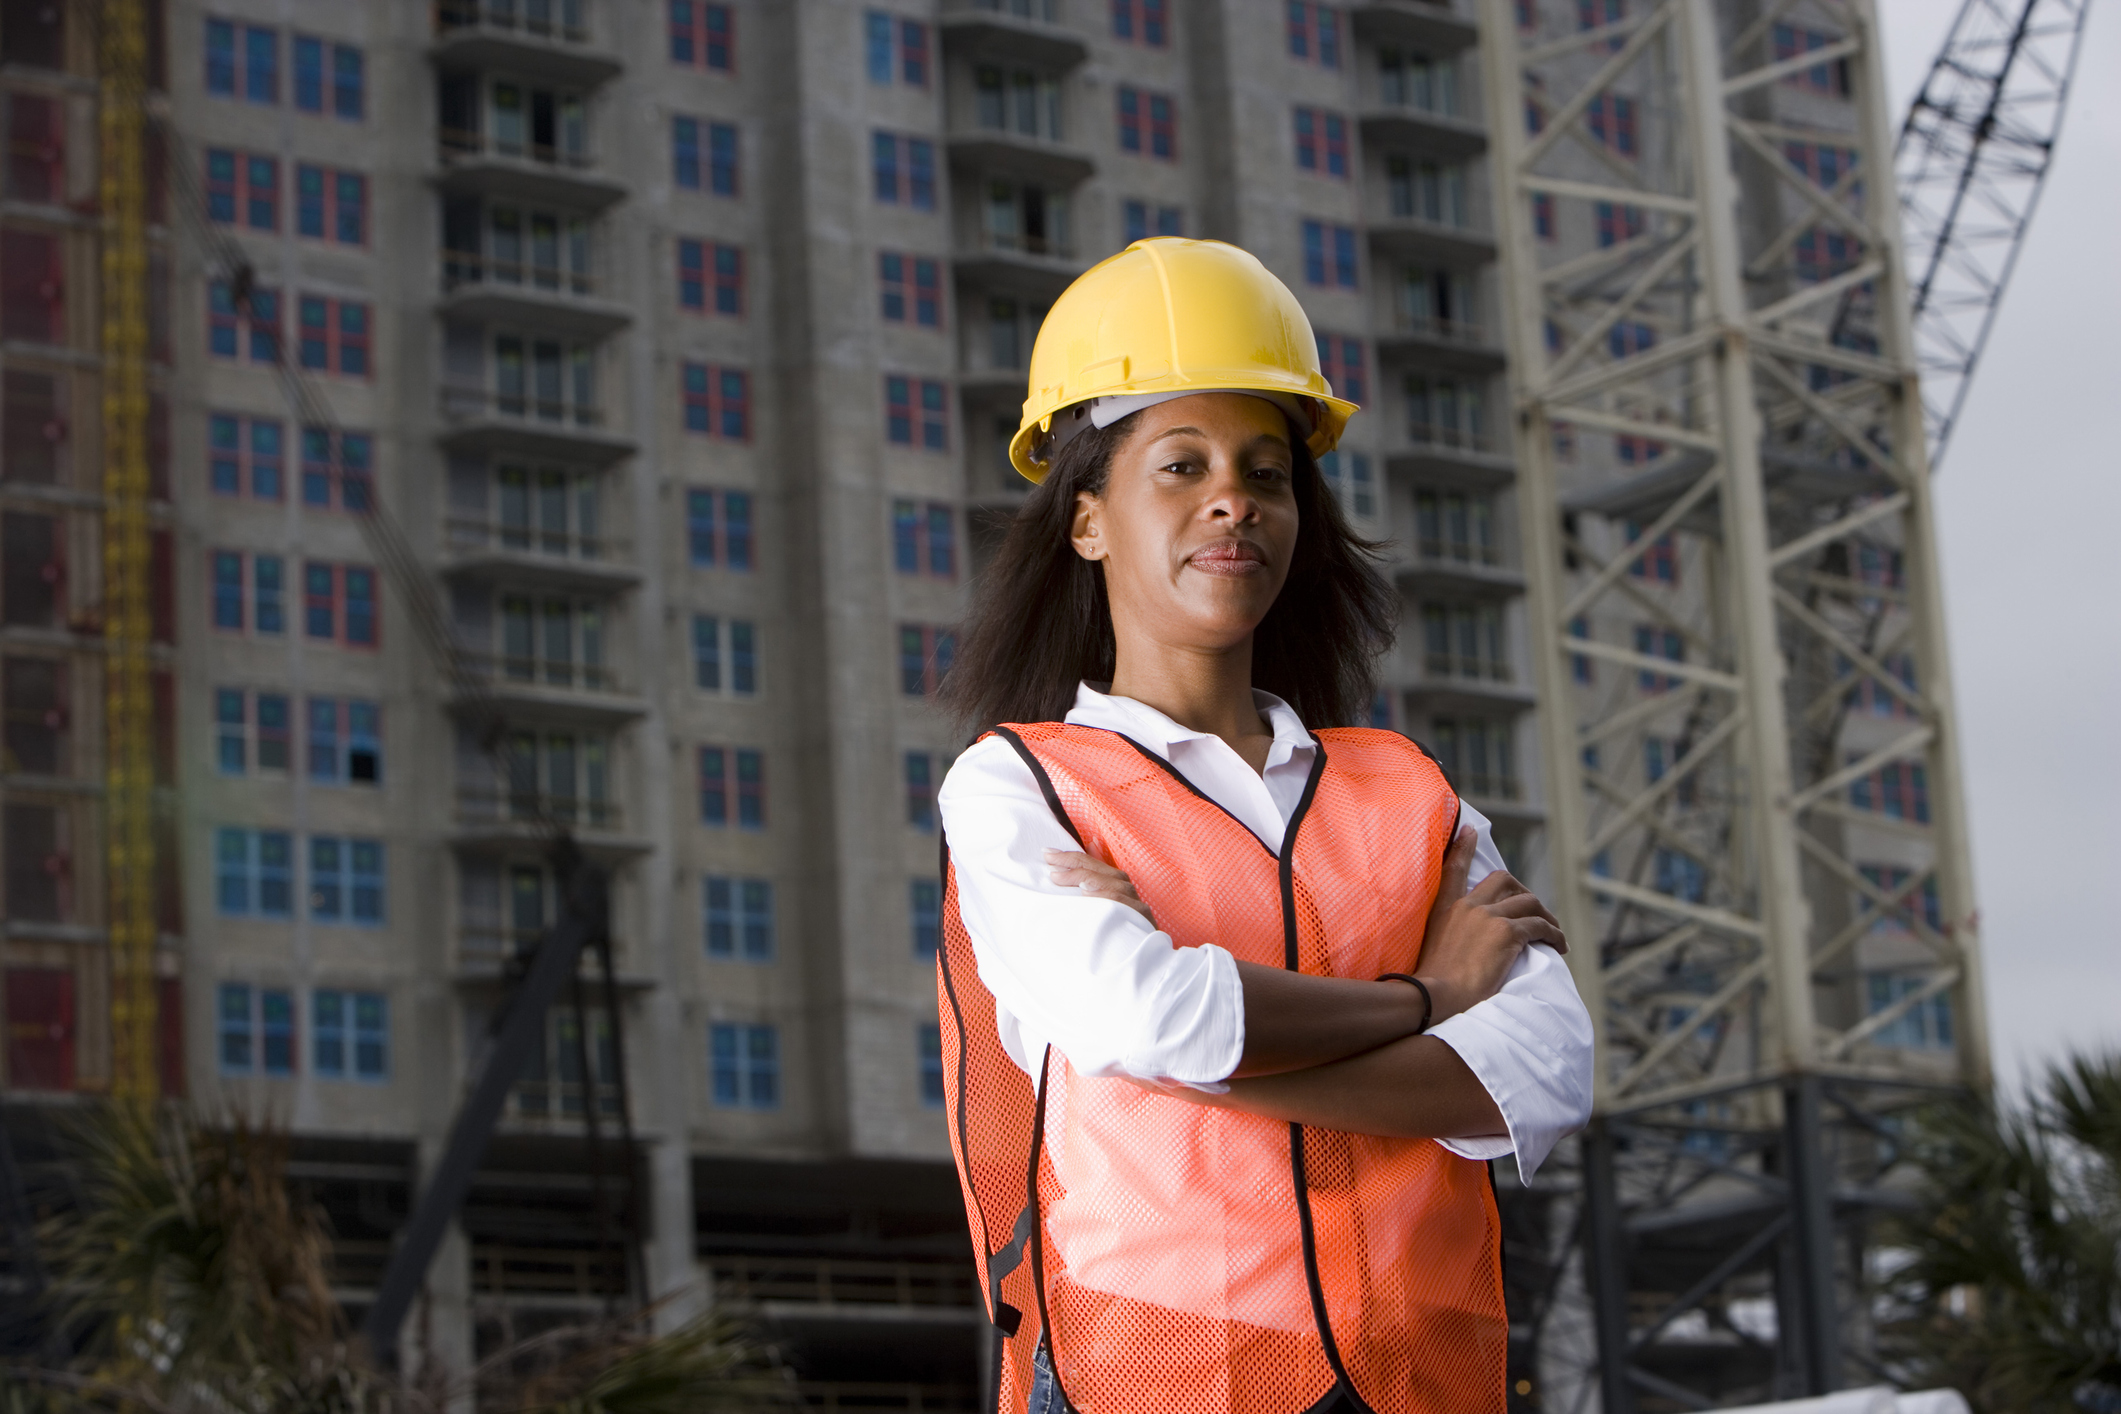 Construction Tips, Construction Trends, Construction Employee Trends, Construction Onboarding Tips, Construction Careers, Construction Jobs